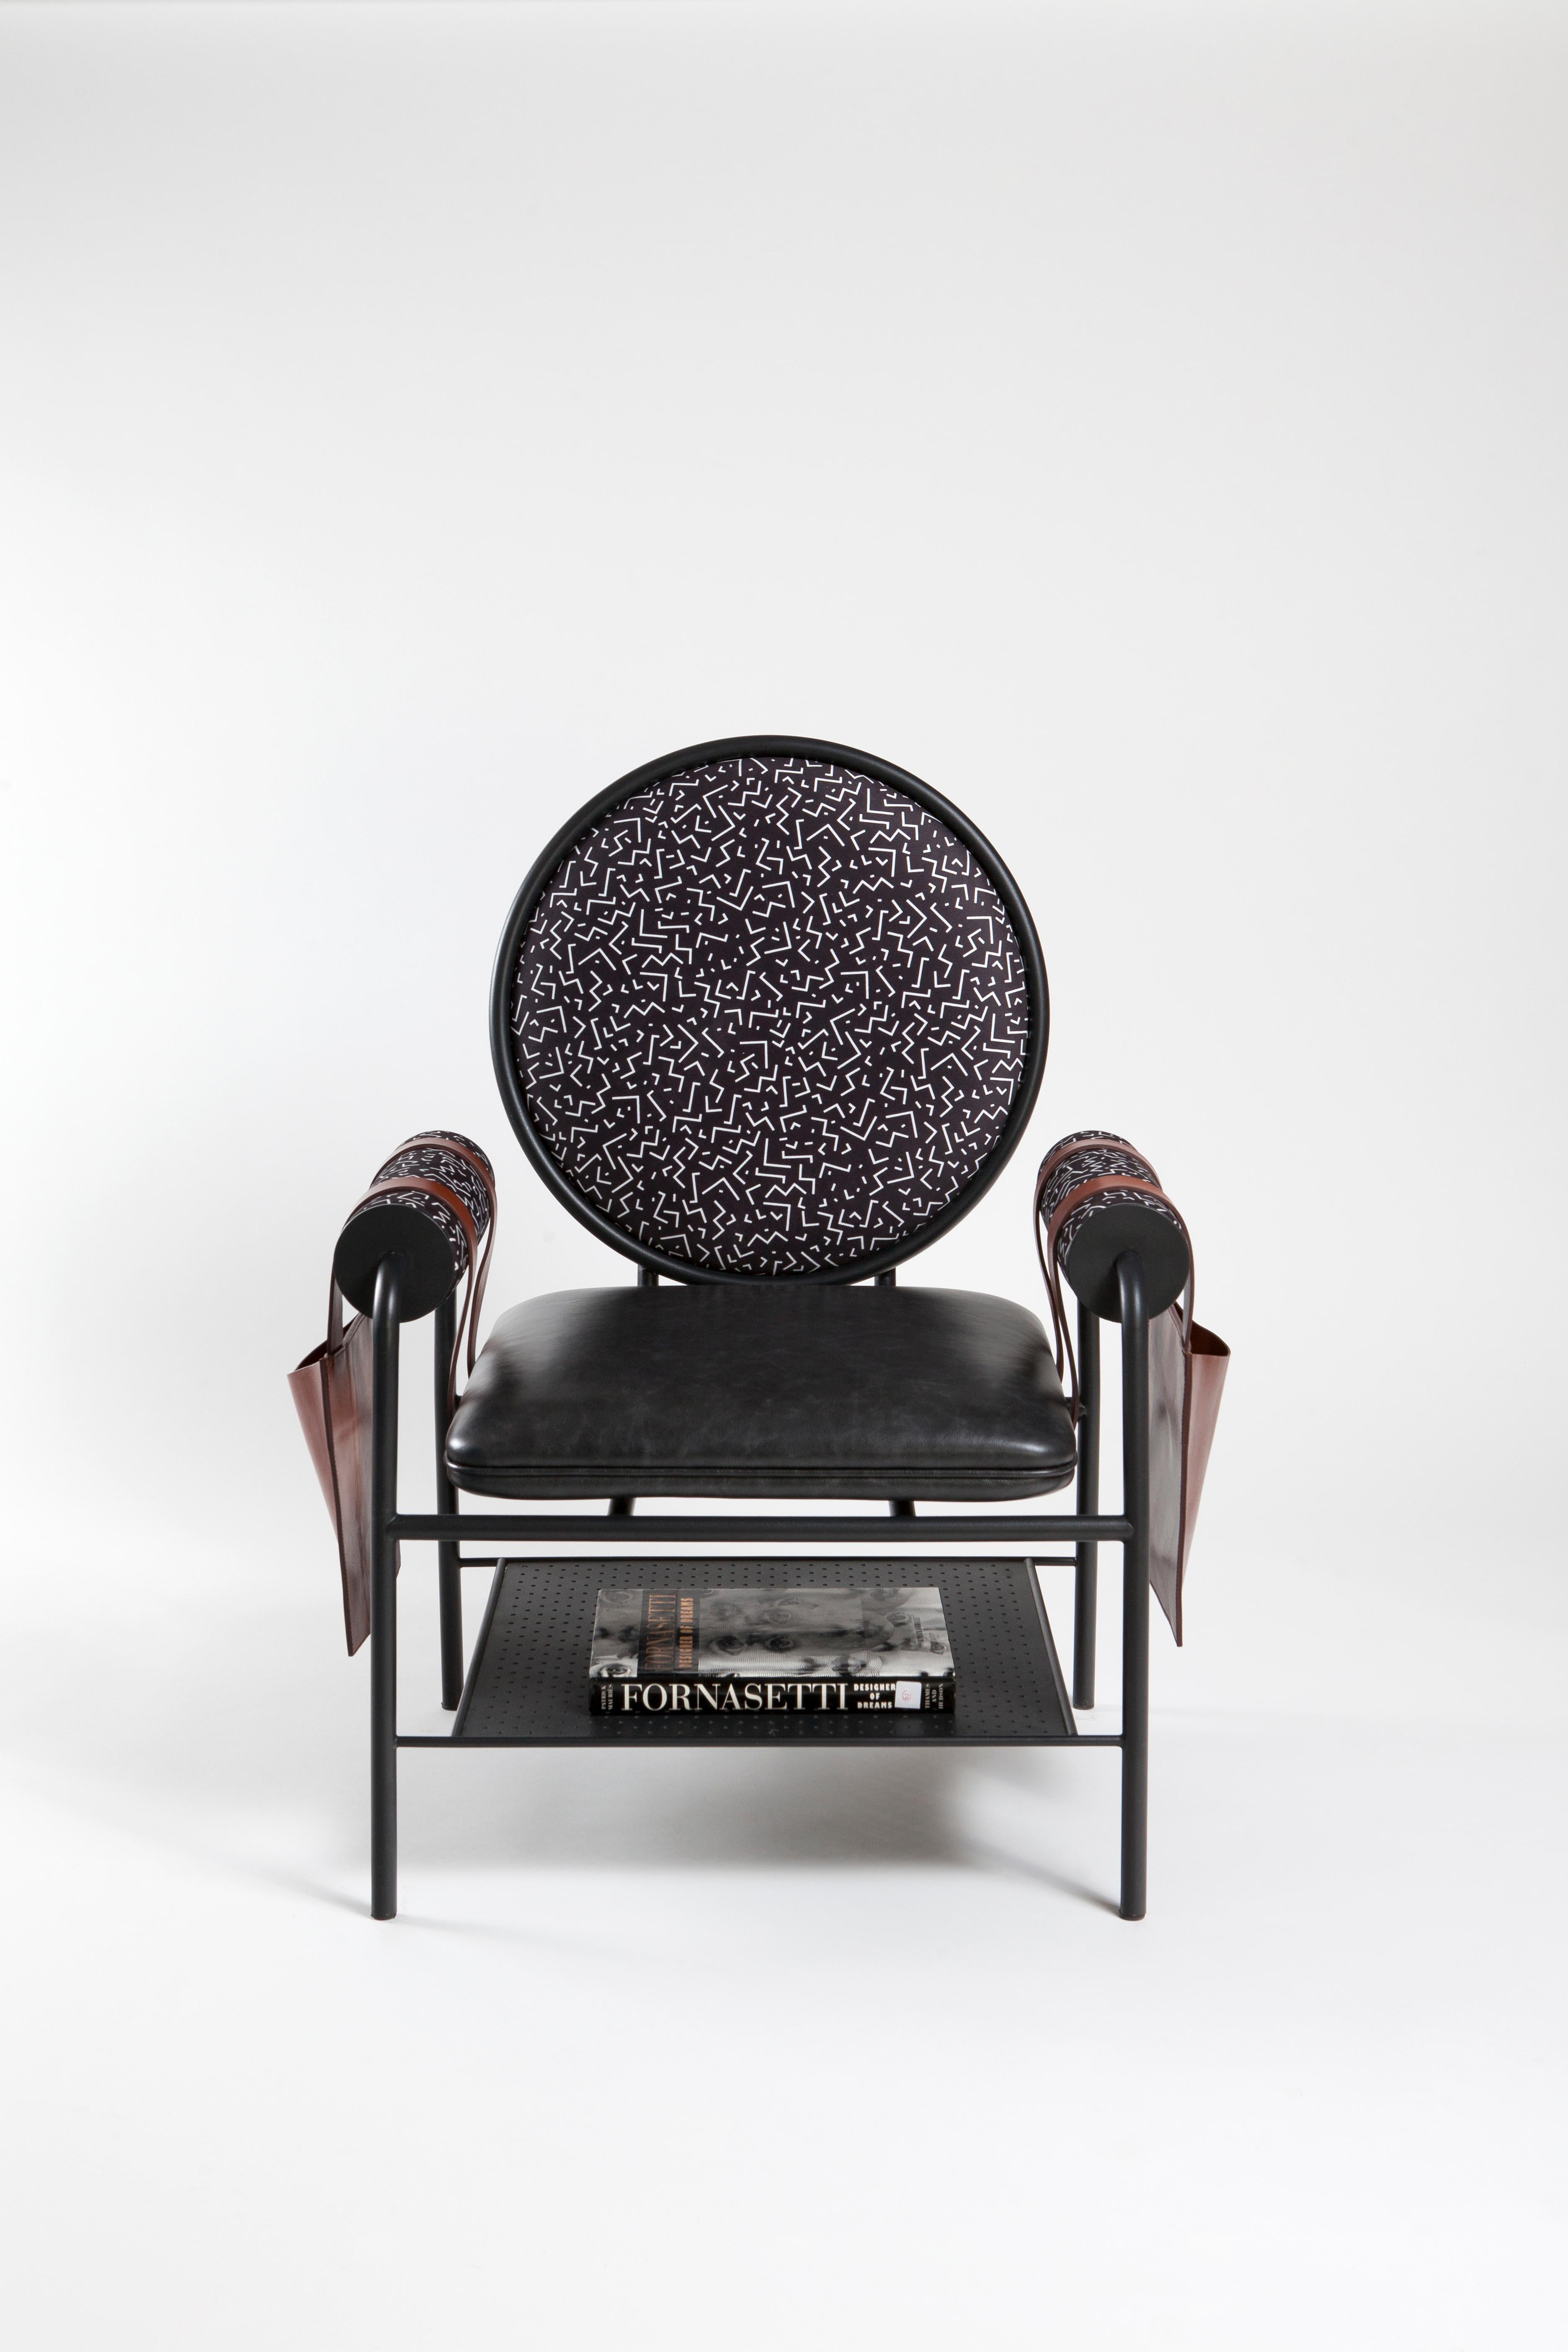 Interprétation du fauteuil par KONTRA.
La chaise en cuir offre une assise confortable avec ses propres poches latérales en cuir.

